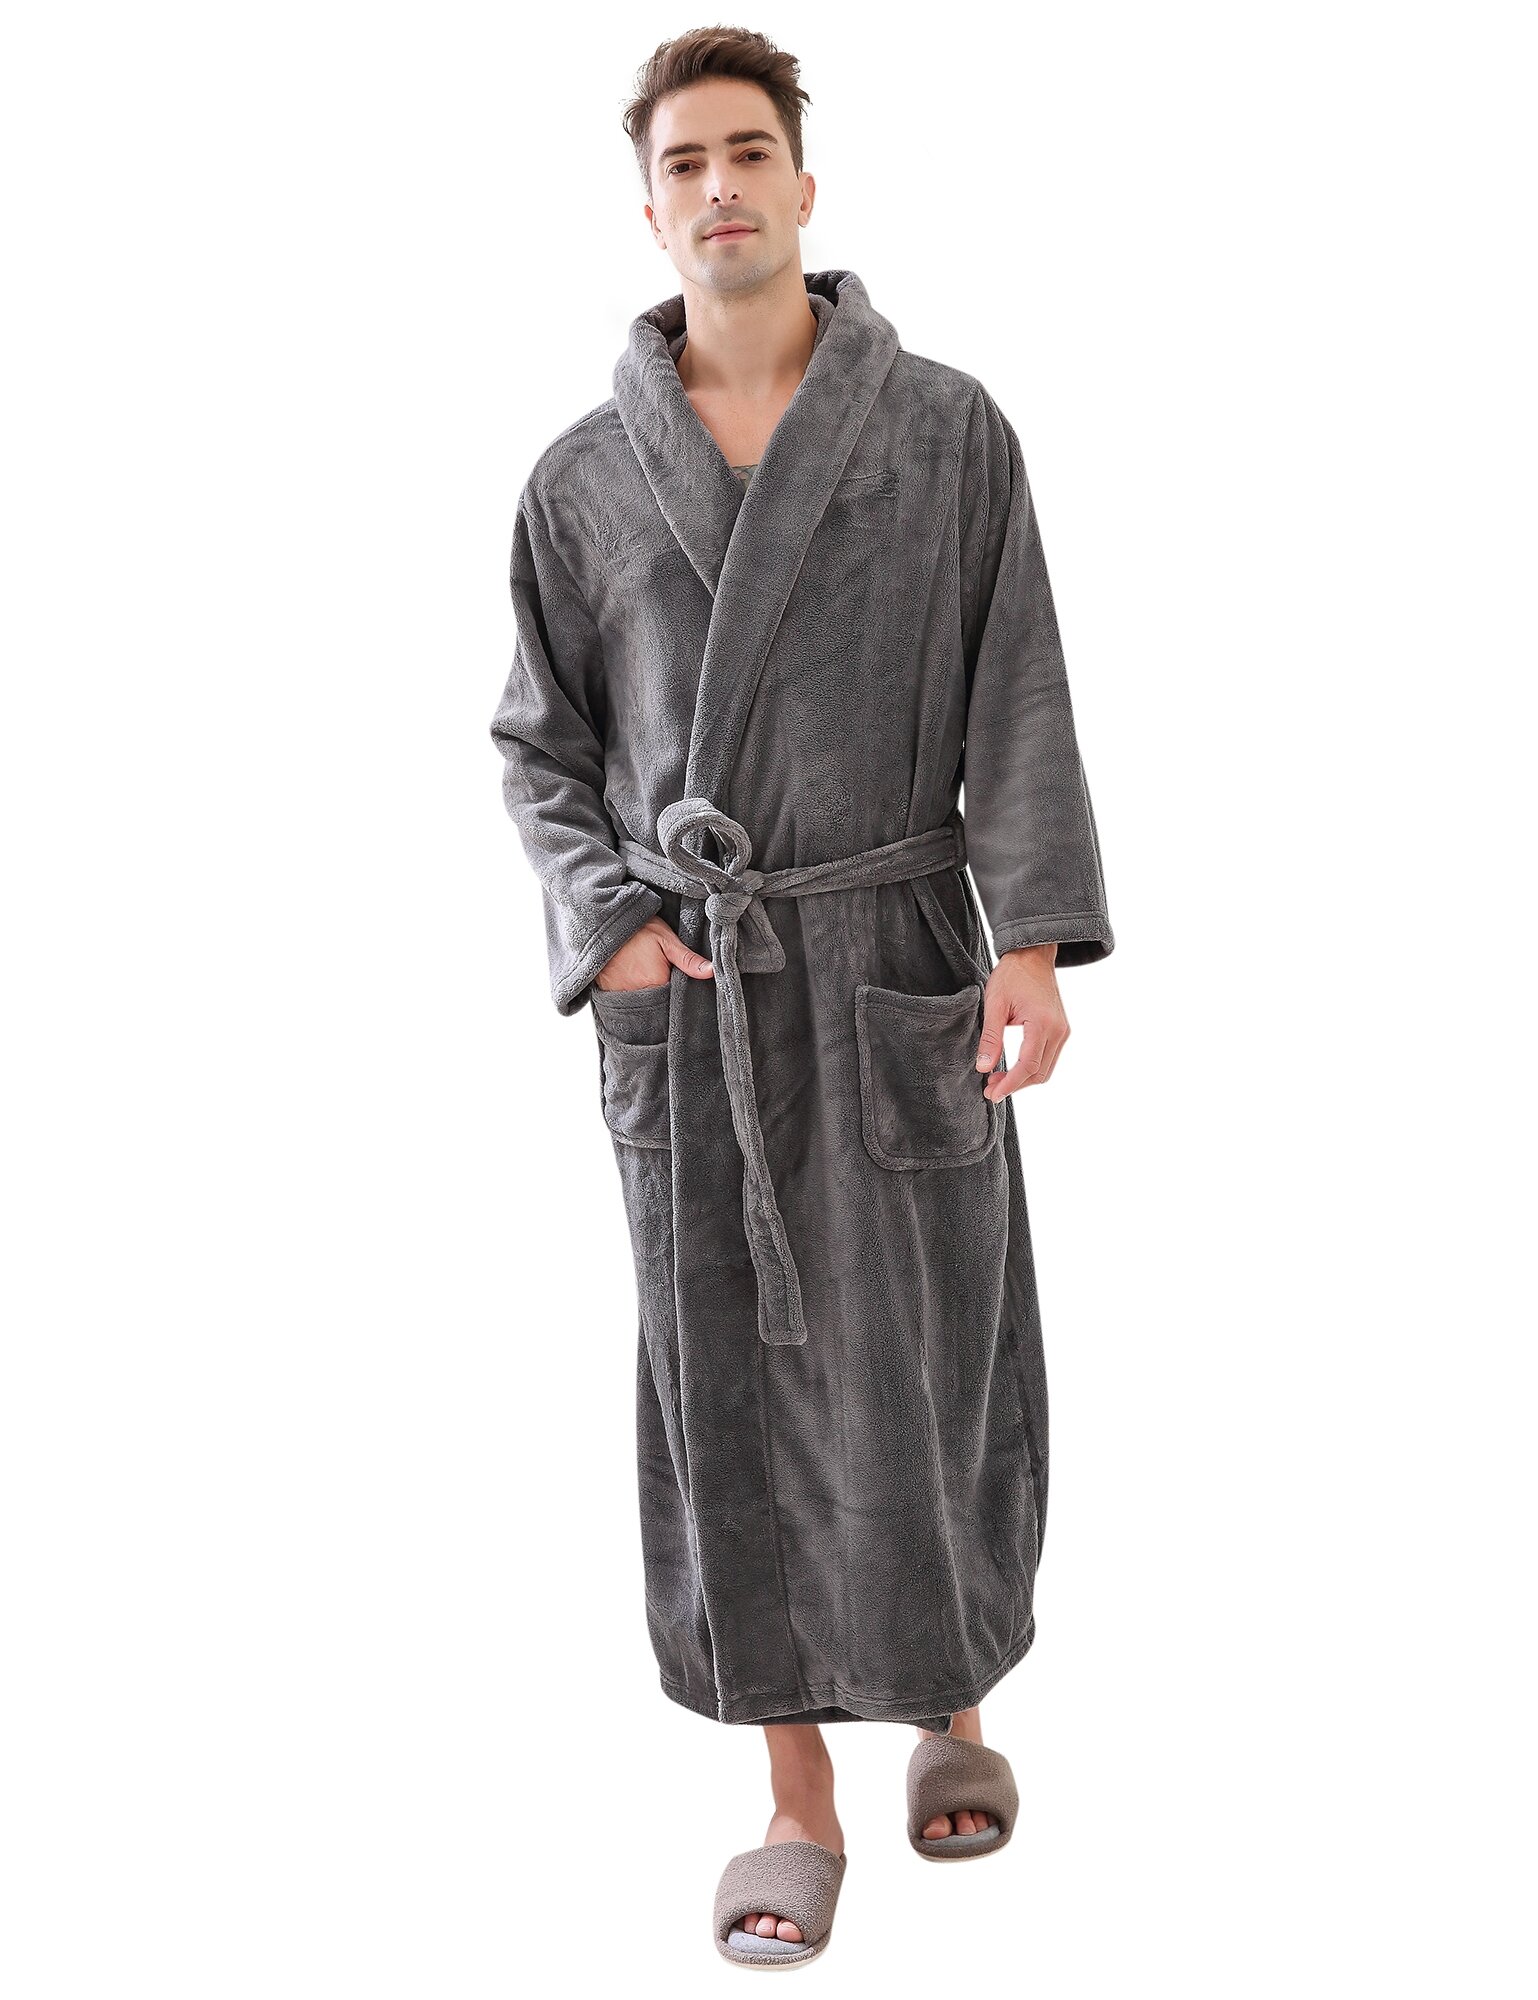 Latitude Run® Men's Shawl Collar Warm And Soft Fleece Robe